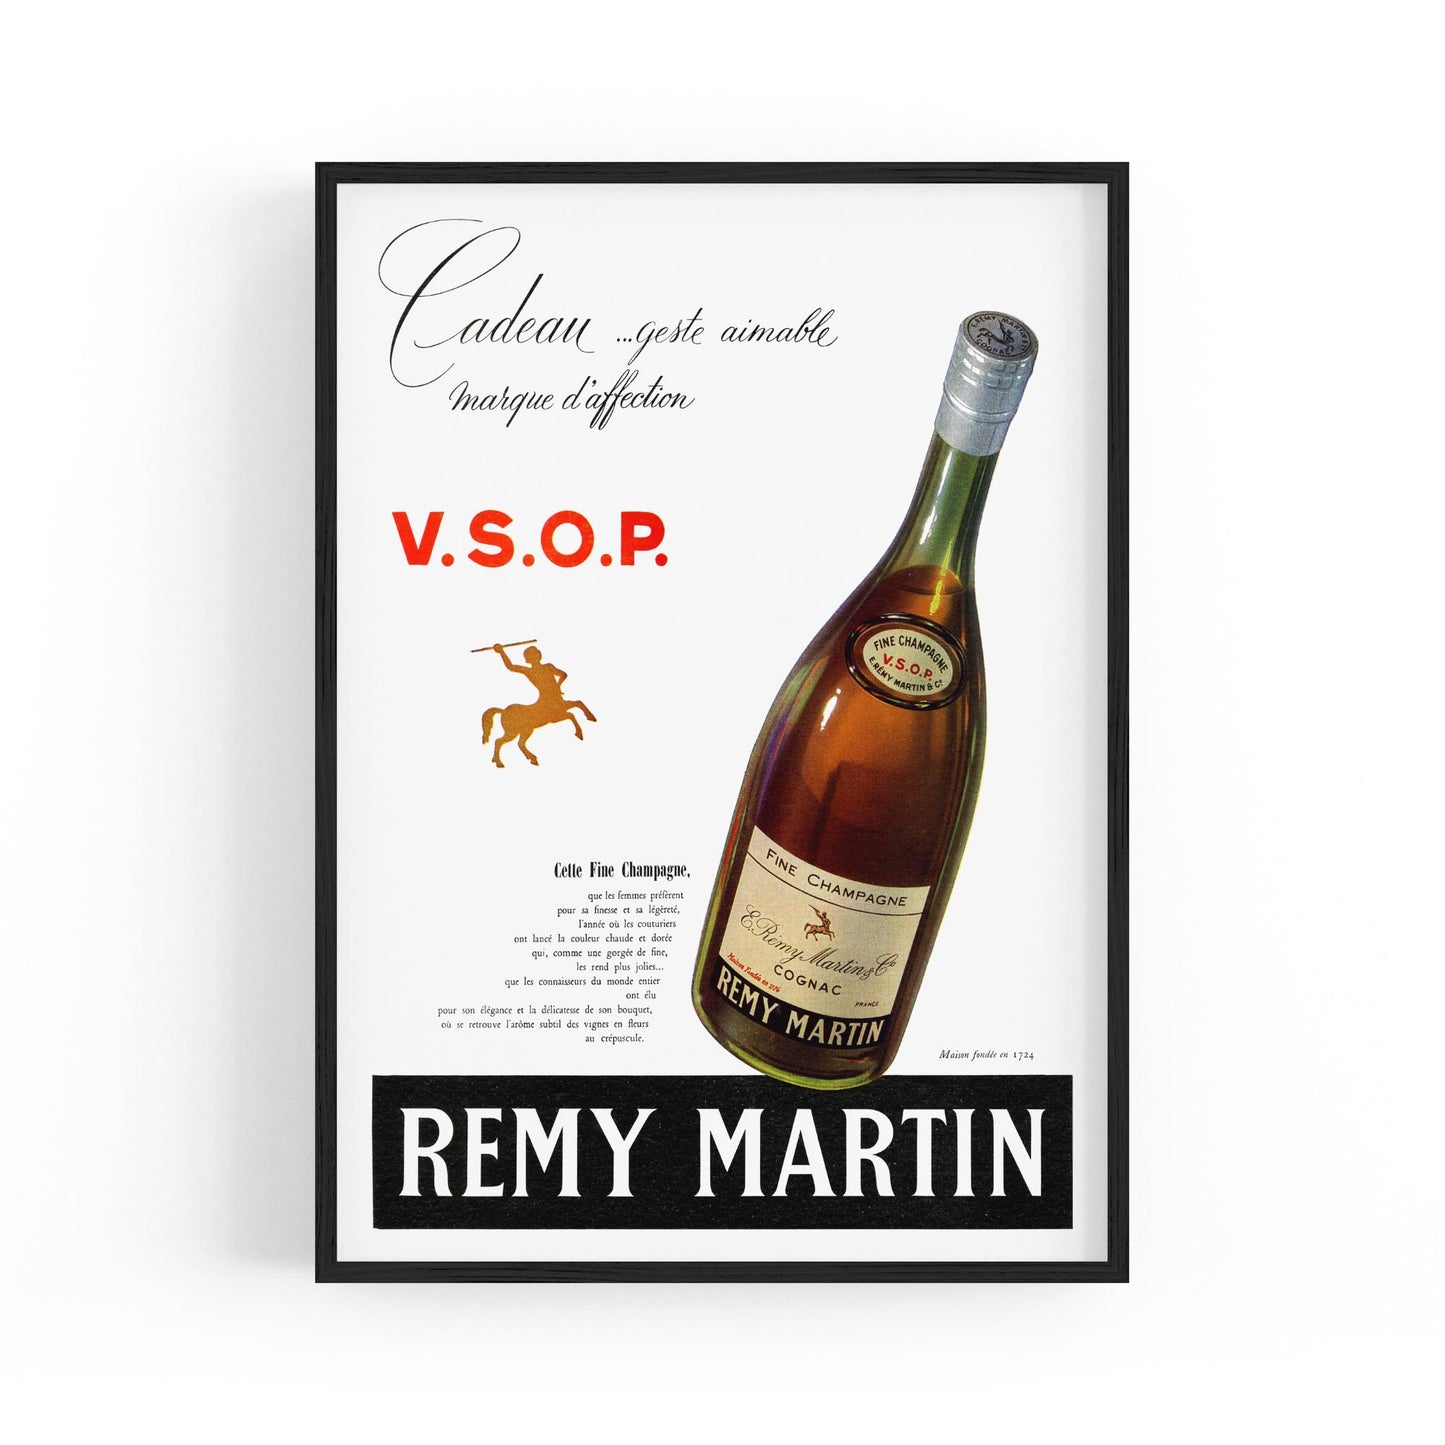 Remy Martin Cognac Champagne Wine | Framed Vintage Poster